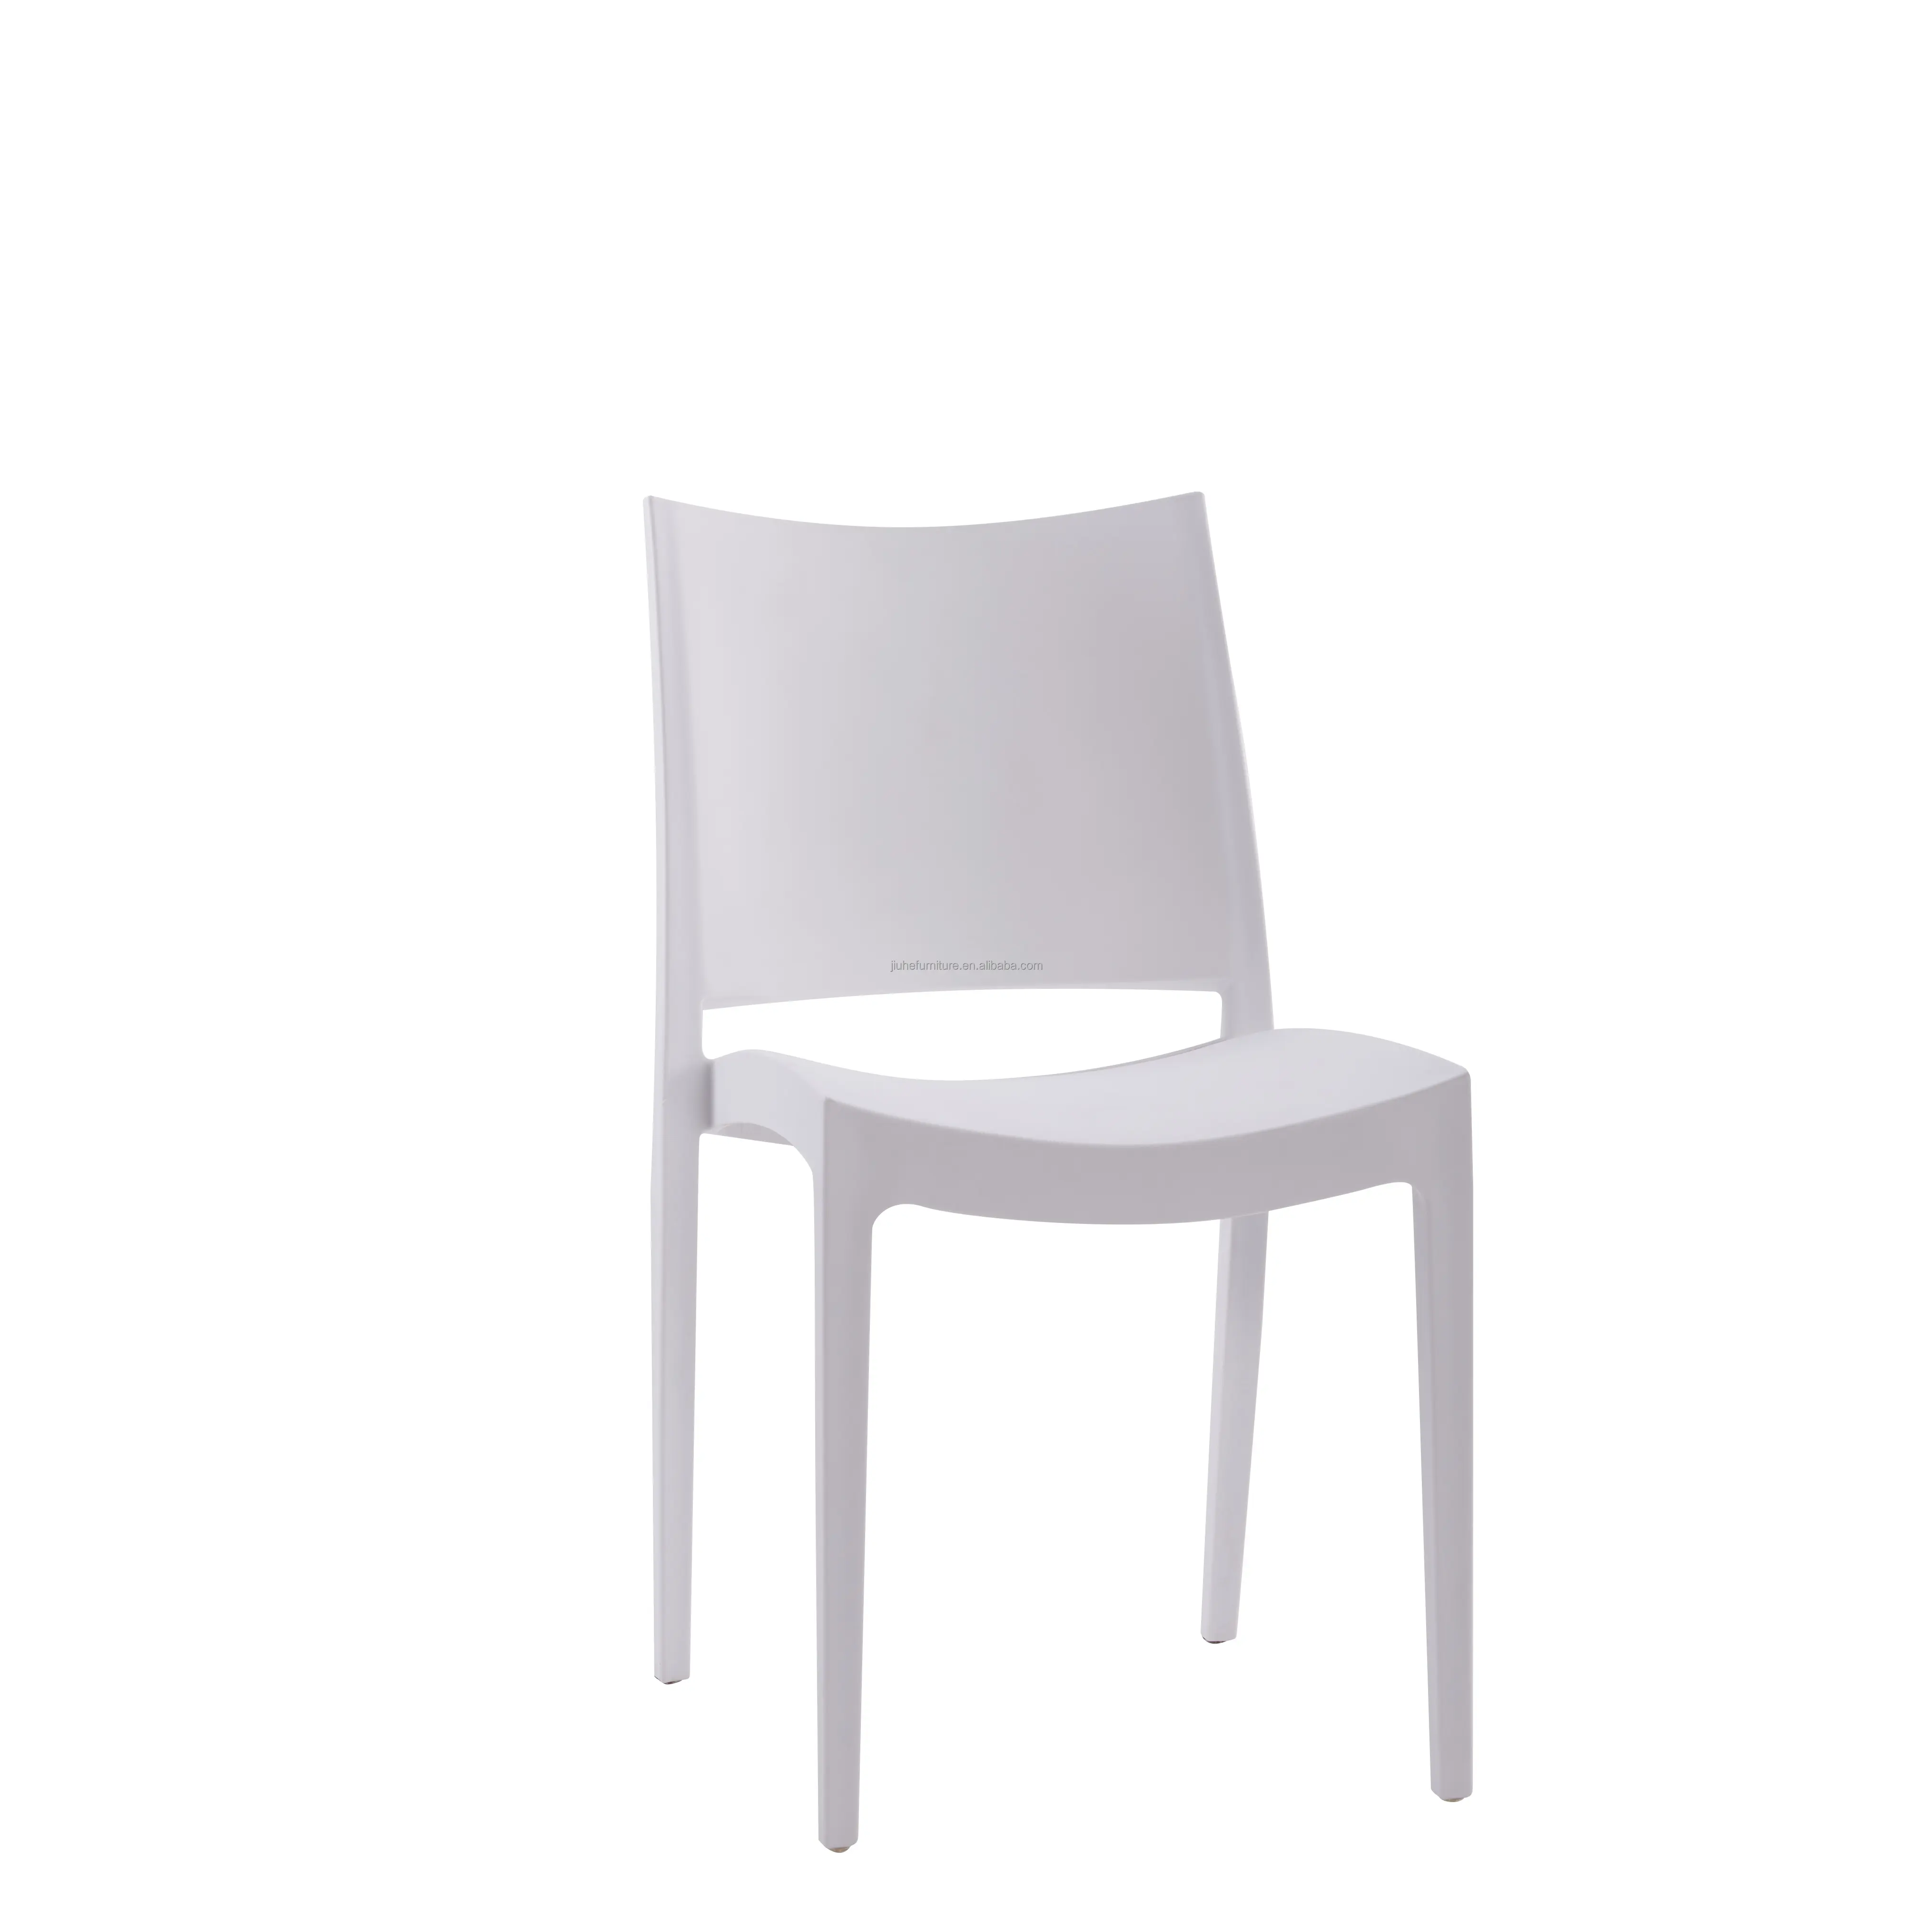 Chaise de salle à manger contemporaine blanche empilable pour l'extérieur en plastique polypropylène